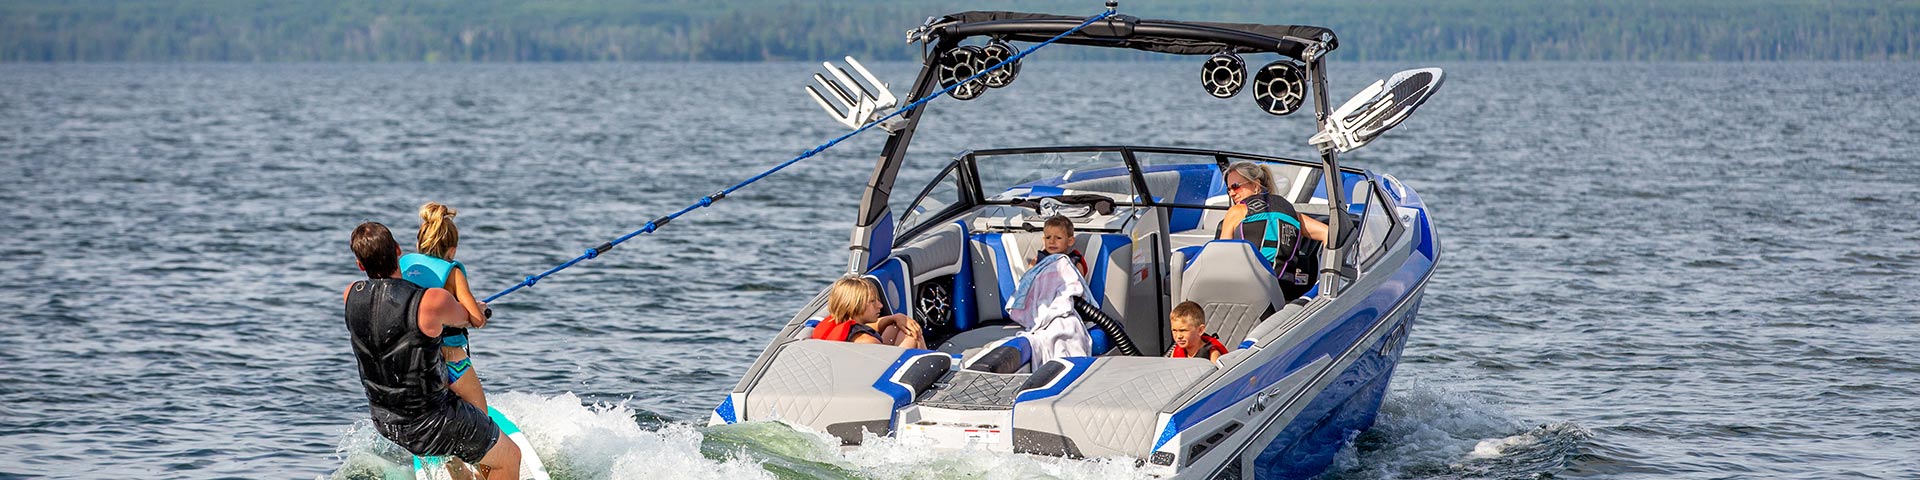 Une famille fait du surf sur le sillage d’un bateau sur le lac Waskesiu, un jour d’été, au parc national de Prince Albert.